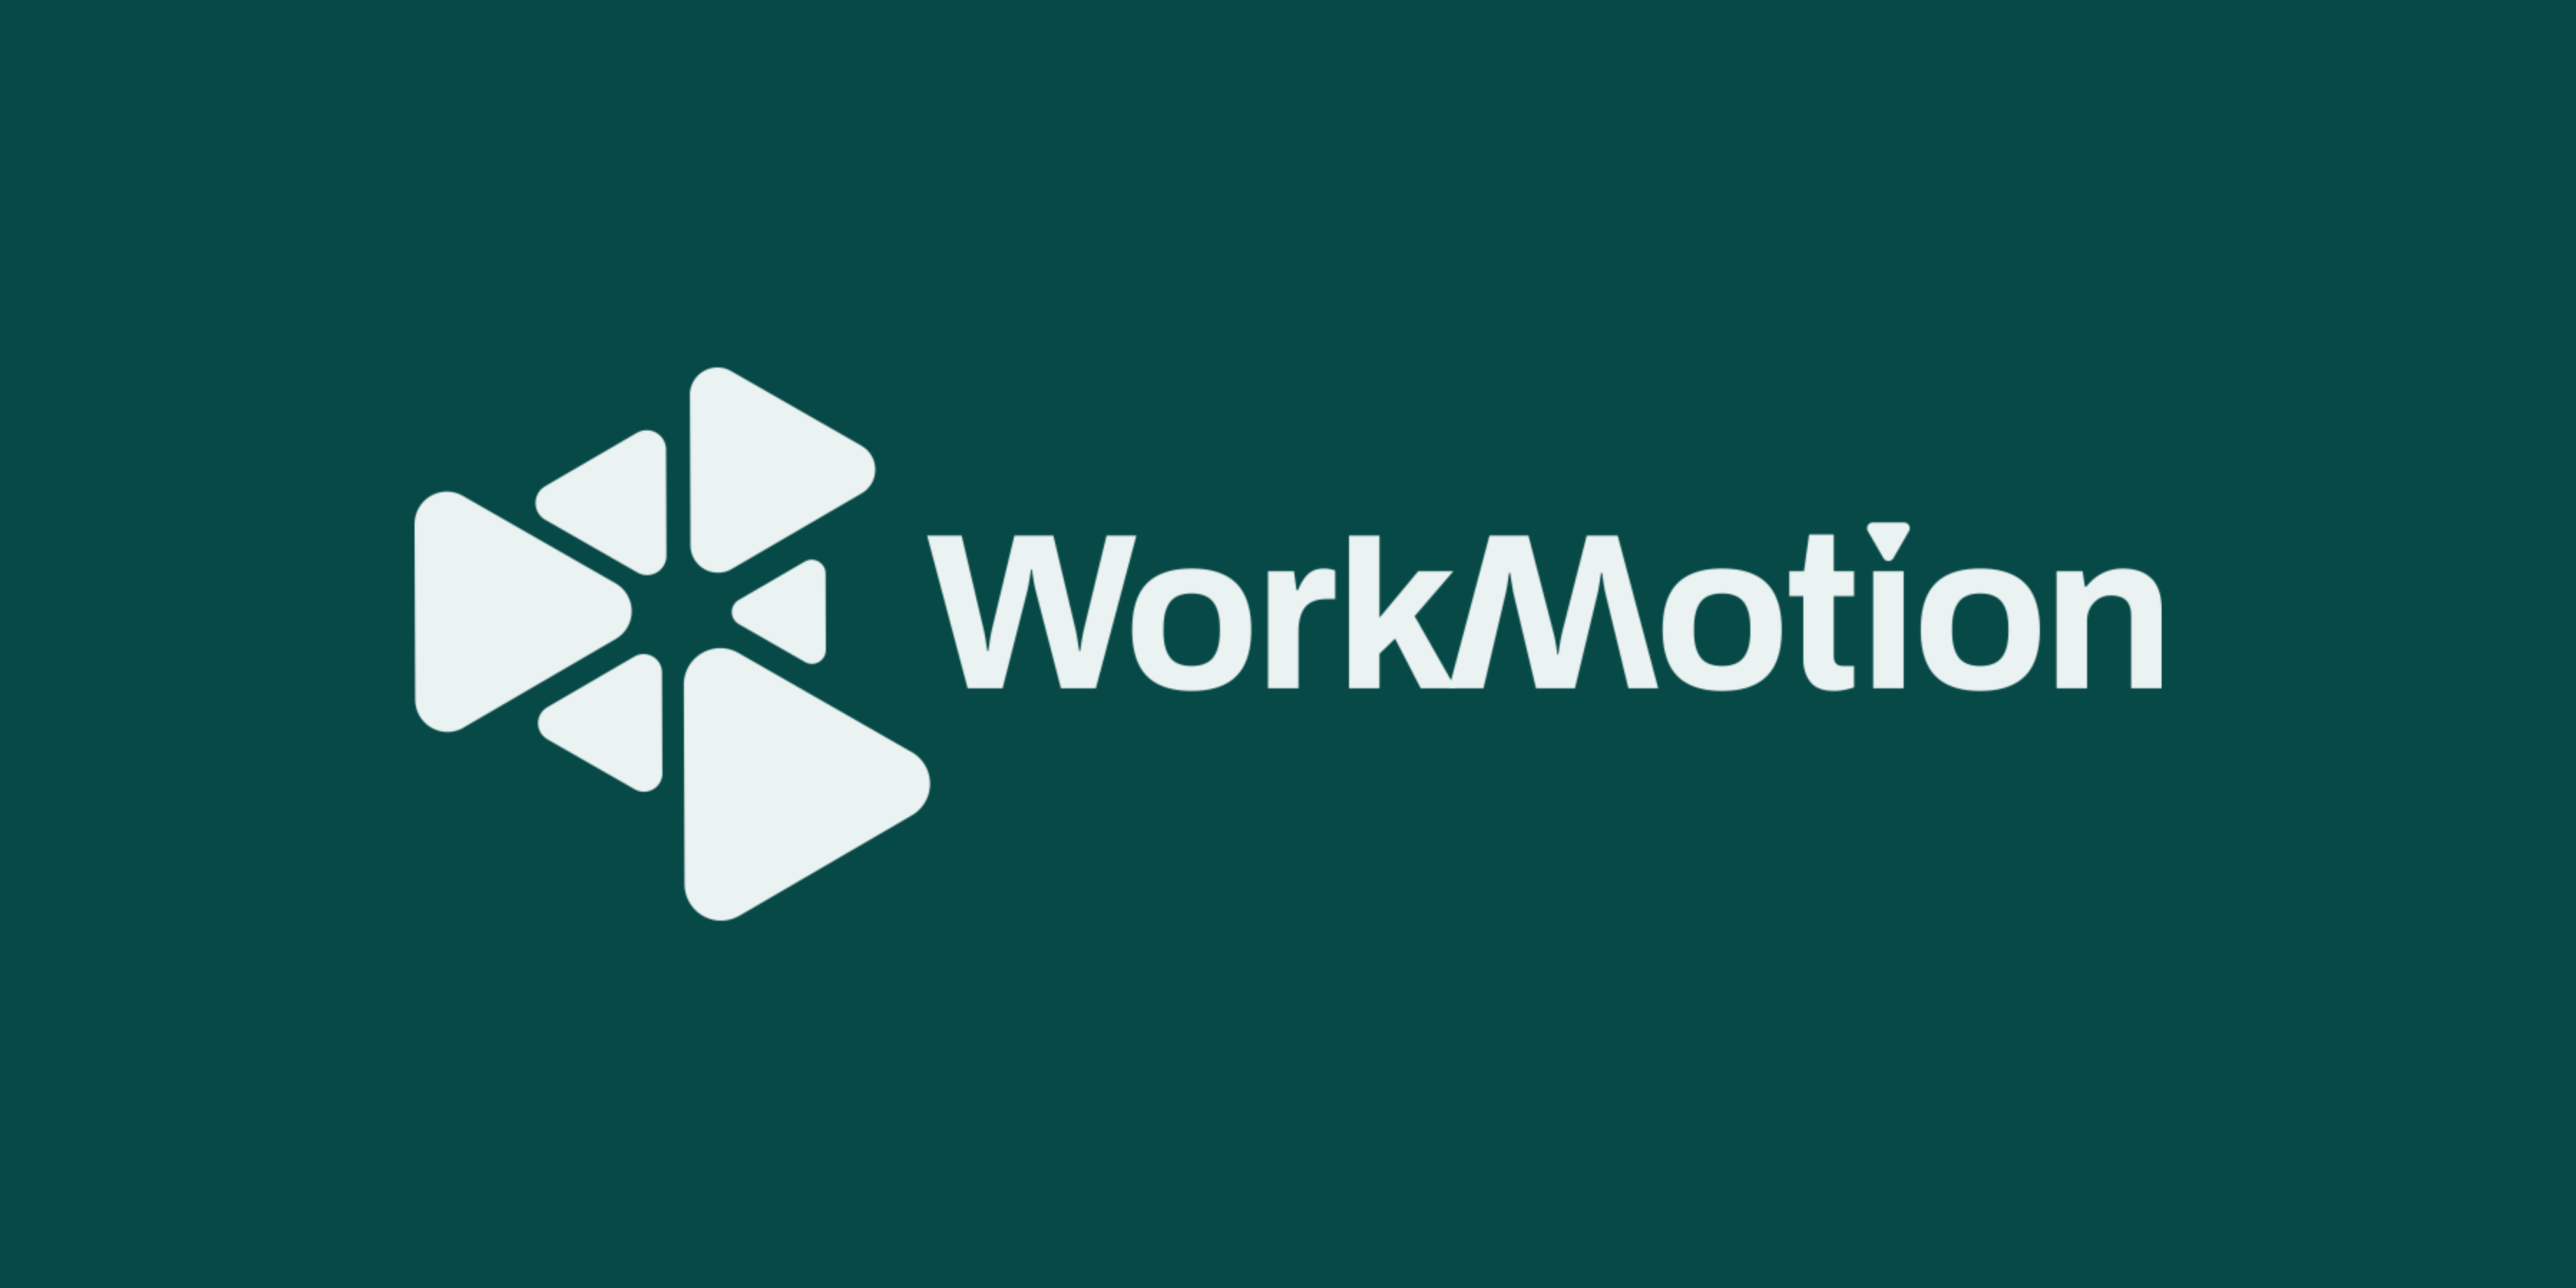 WorkMotion / startup von Berlin / Background